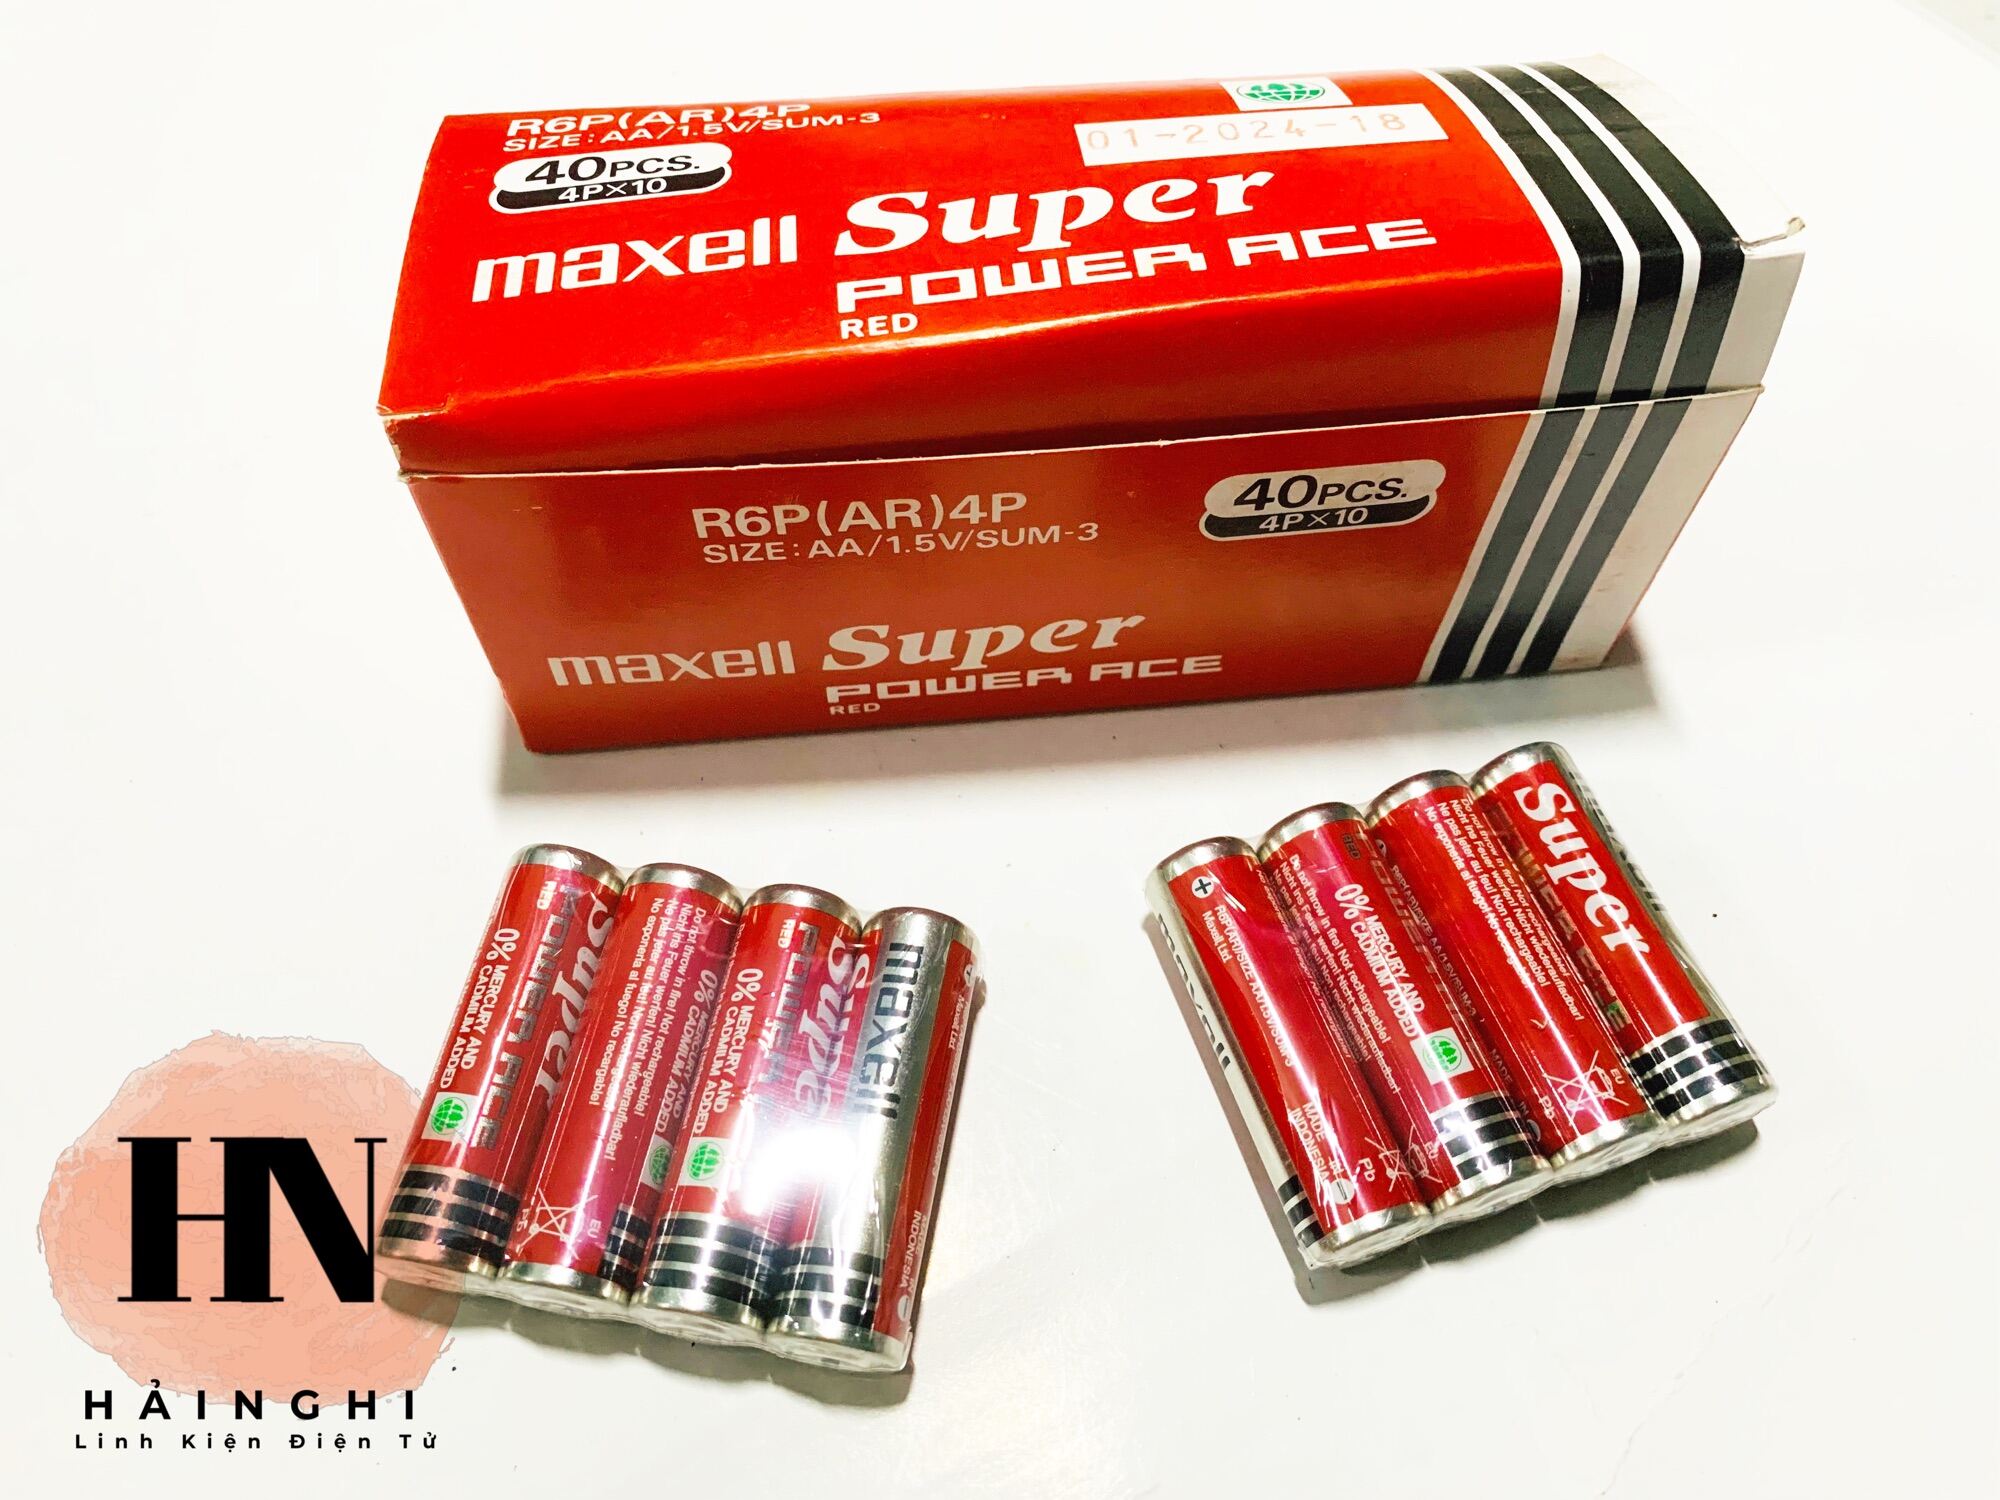 PIN 2A Maxell Super Power ACE Red Hộp 40 Viên thumbnail